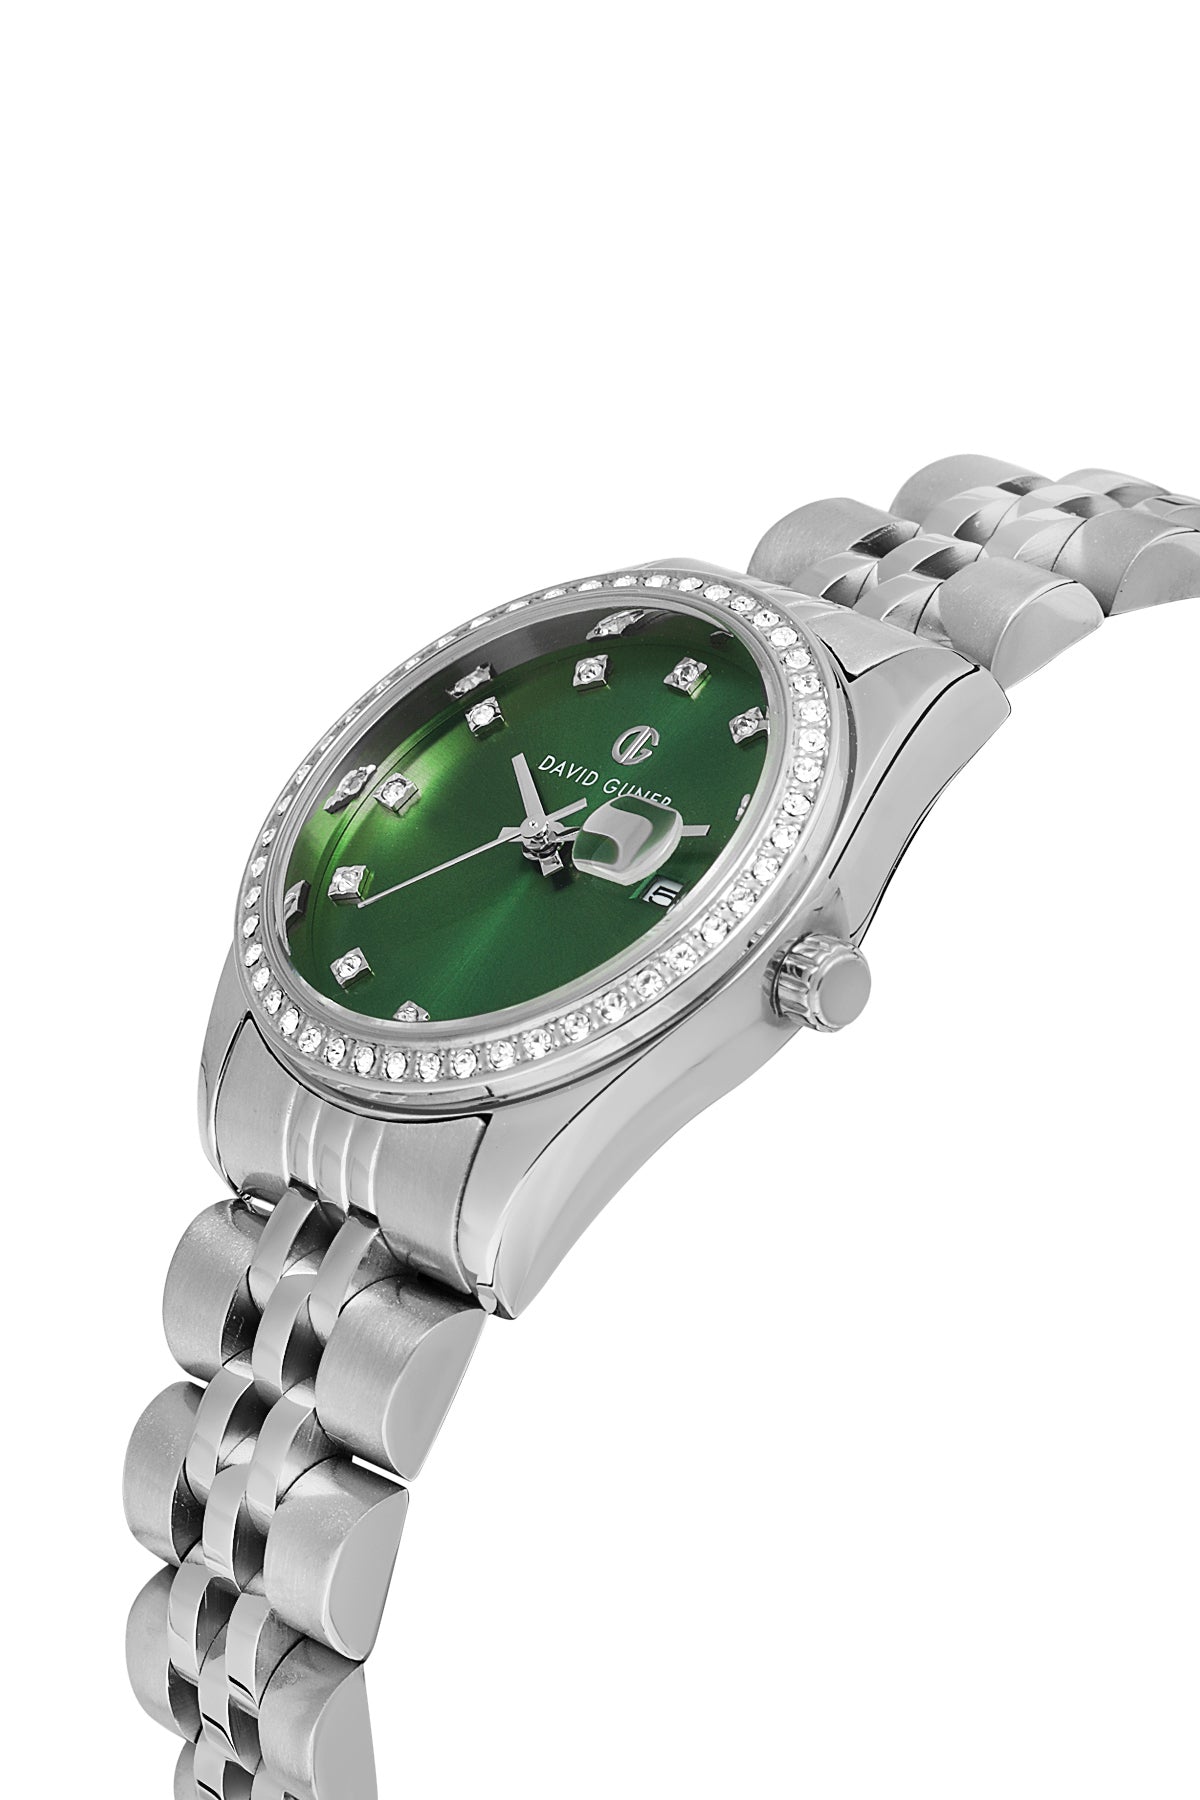 David Guner Silver Plated Green Dial Women's Wristwatch